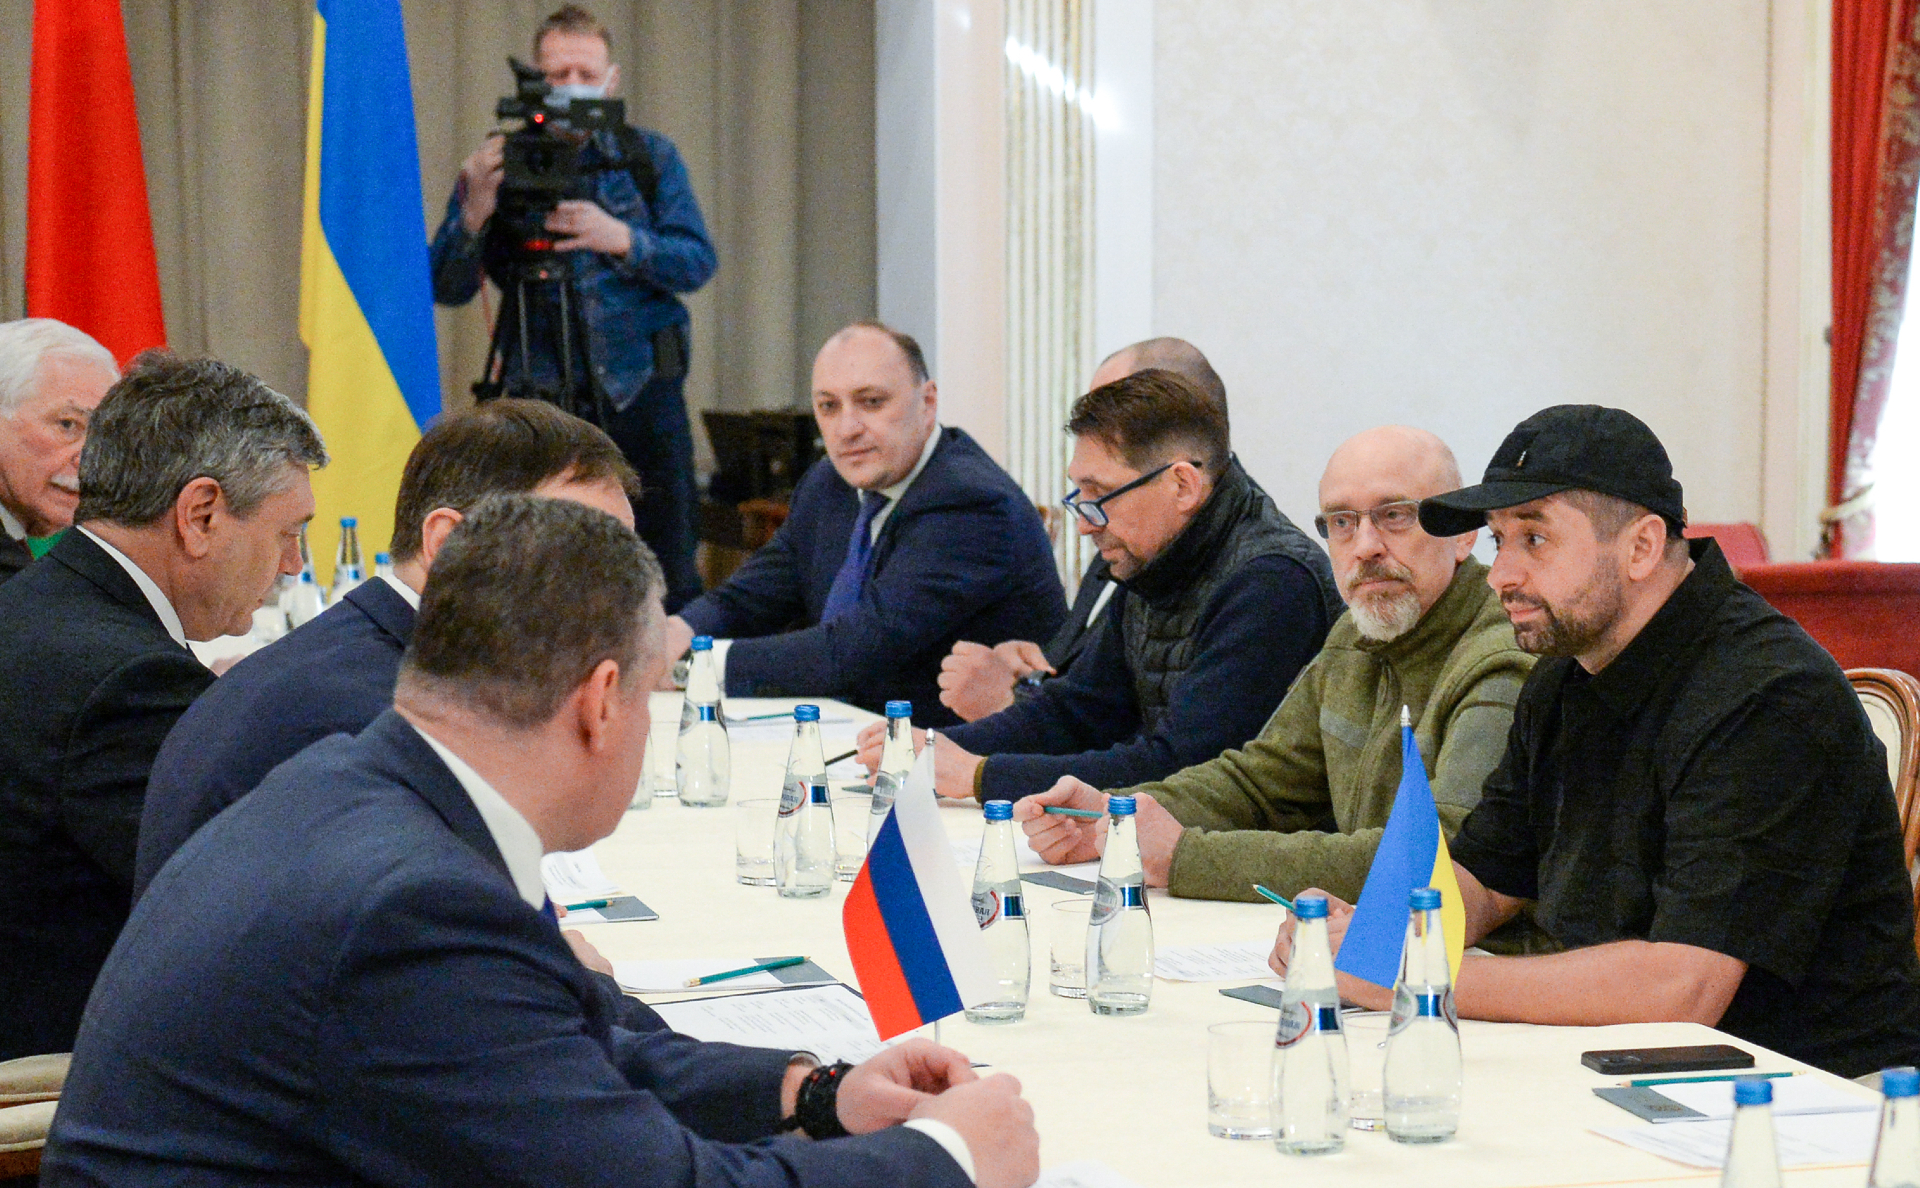 Члены делегаций на украинско-российских переговорах. Денис Киреев&nbsp;с правой стороны стола в правом верхнем углу (на фото по центру)